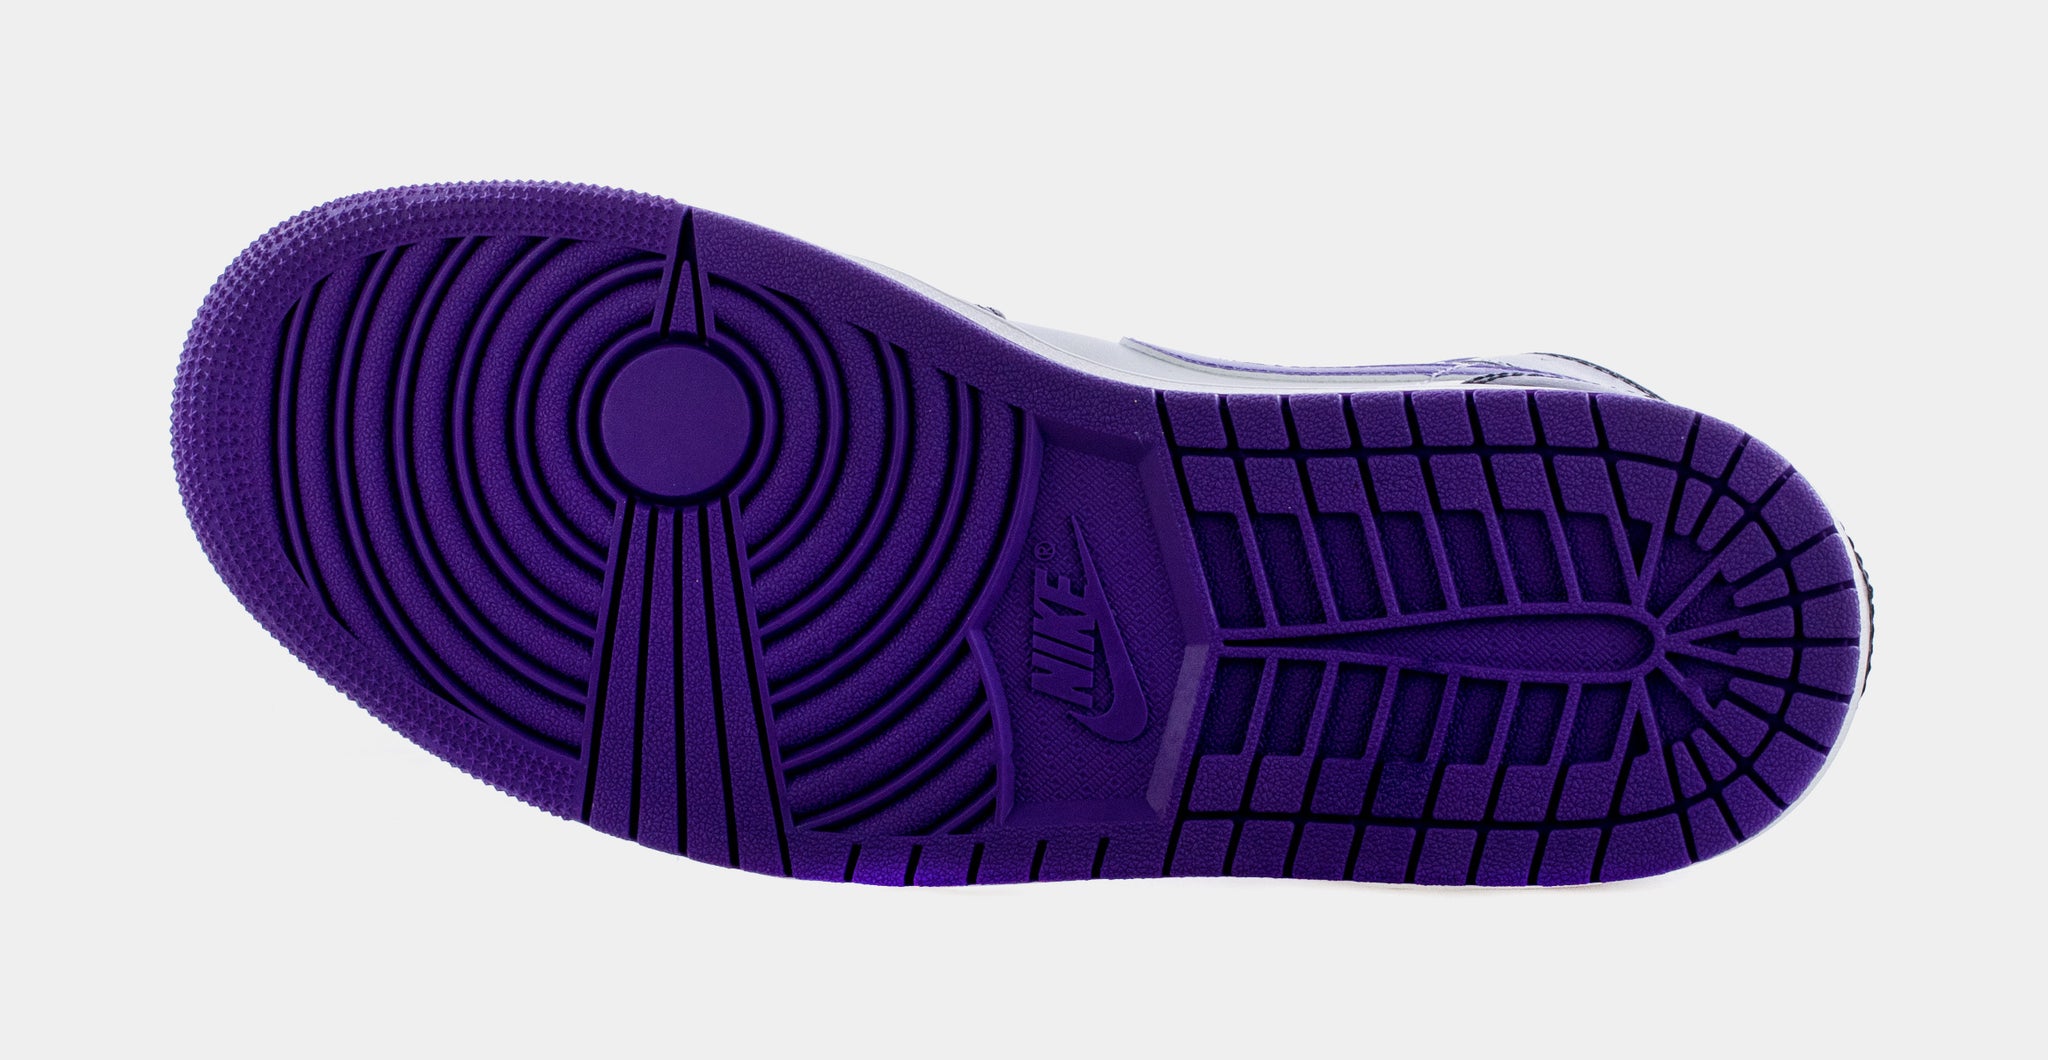 https://www.shoepalace.com/cdn/shop/products/59090d4340e2c6d7cbeceac01e17105a_2048x2048.jpg?v=1653579618&title=jordan-554724-095-air-jordan-1-retro-mid-court-purple-mens-lifestyle-shoes-black-purple